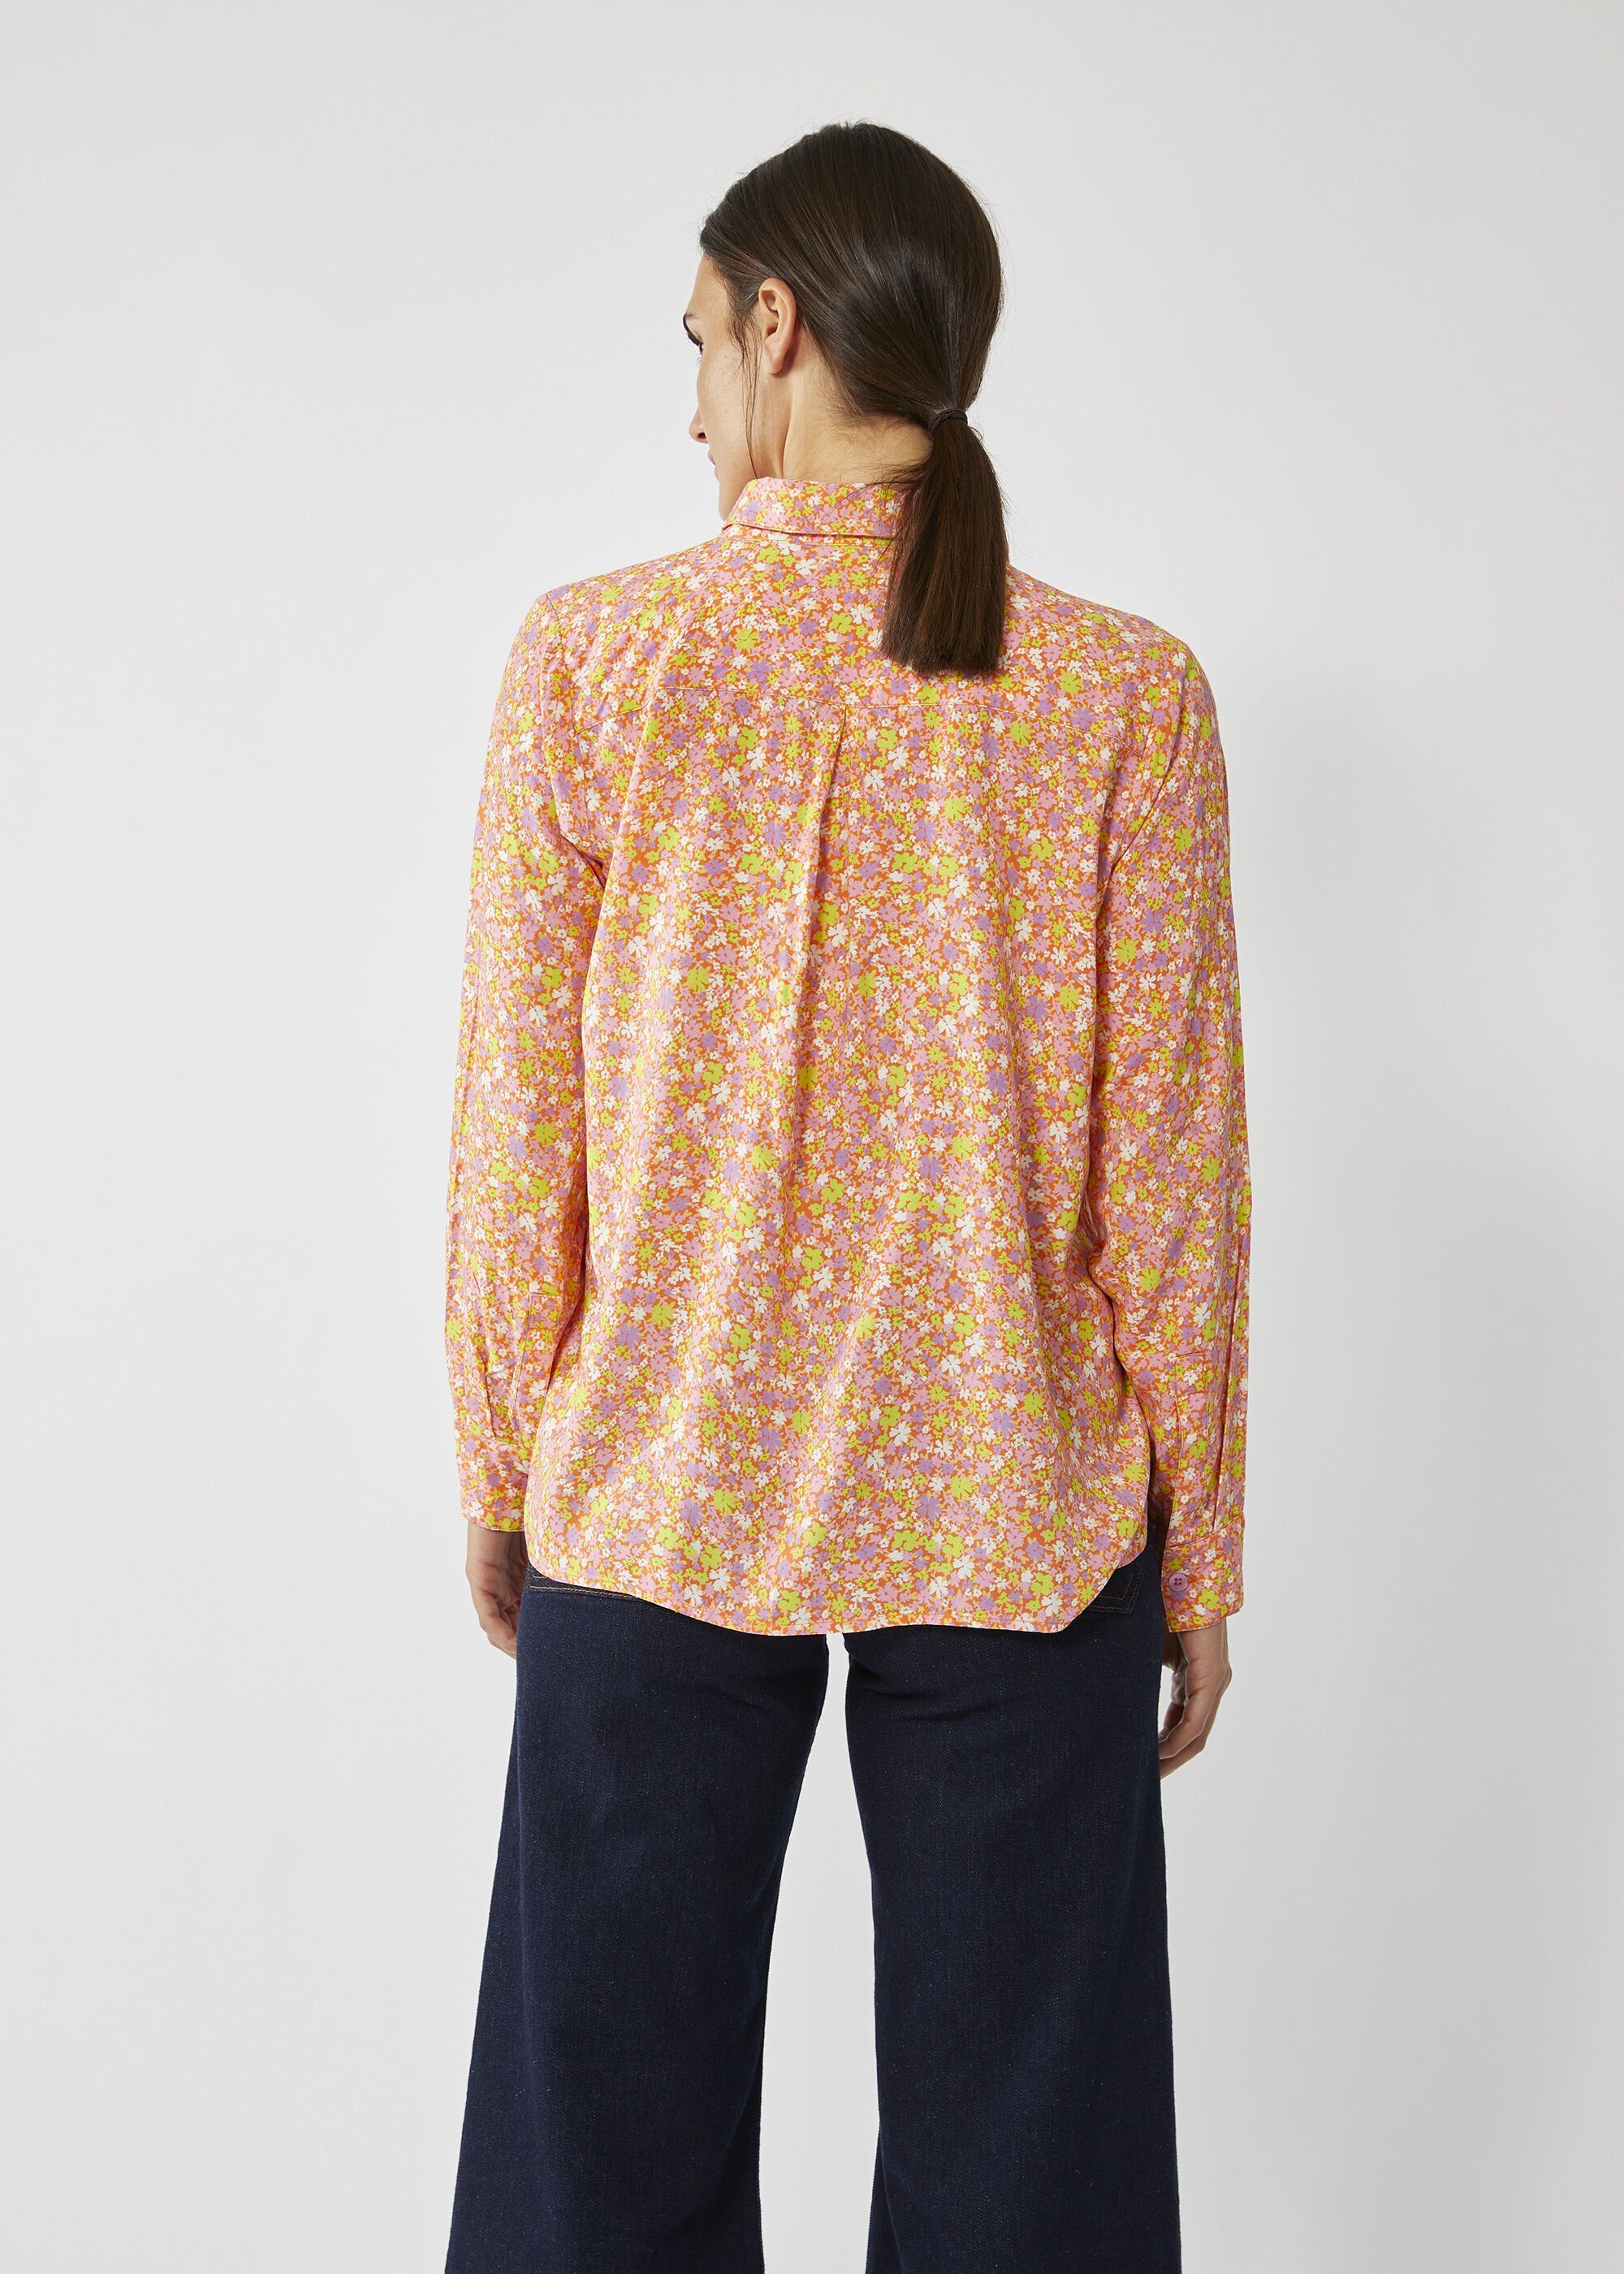 Codello Klassische Bluse aus Viskose Millefleurs-Muster mit